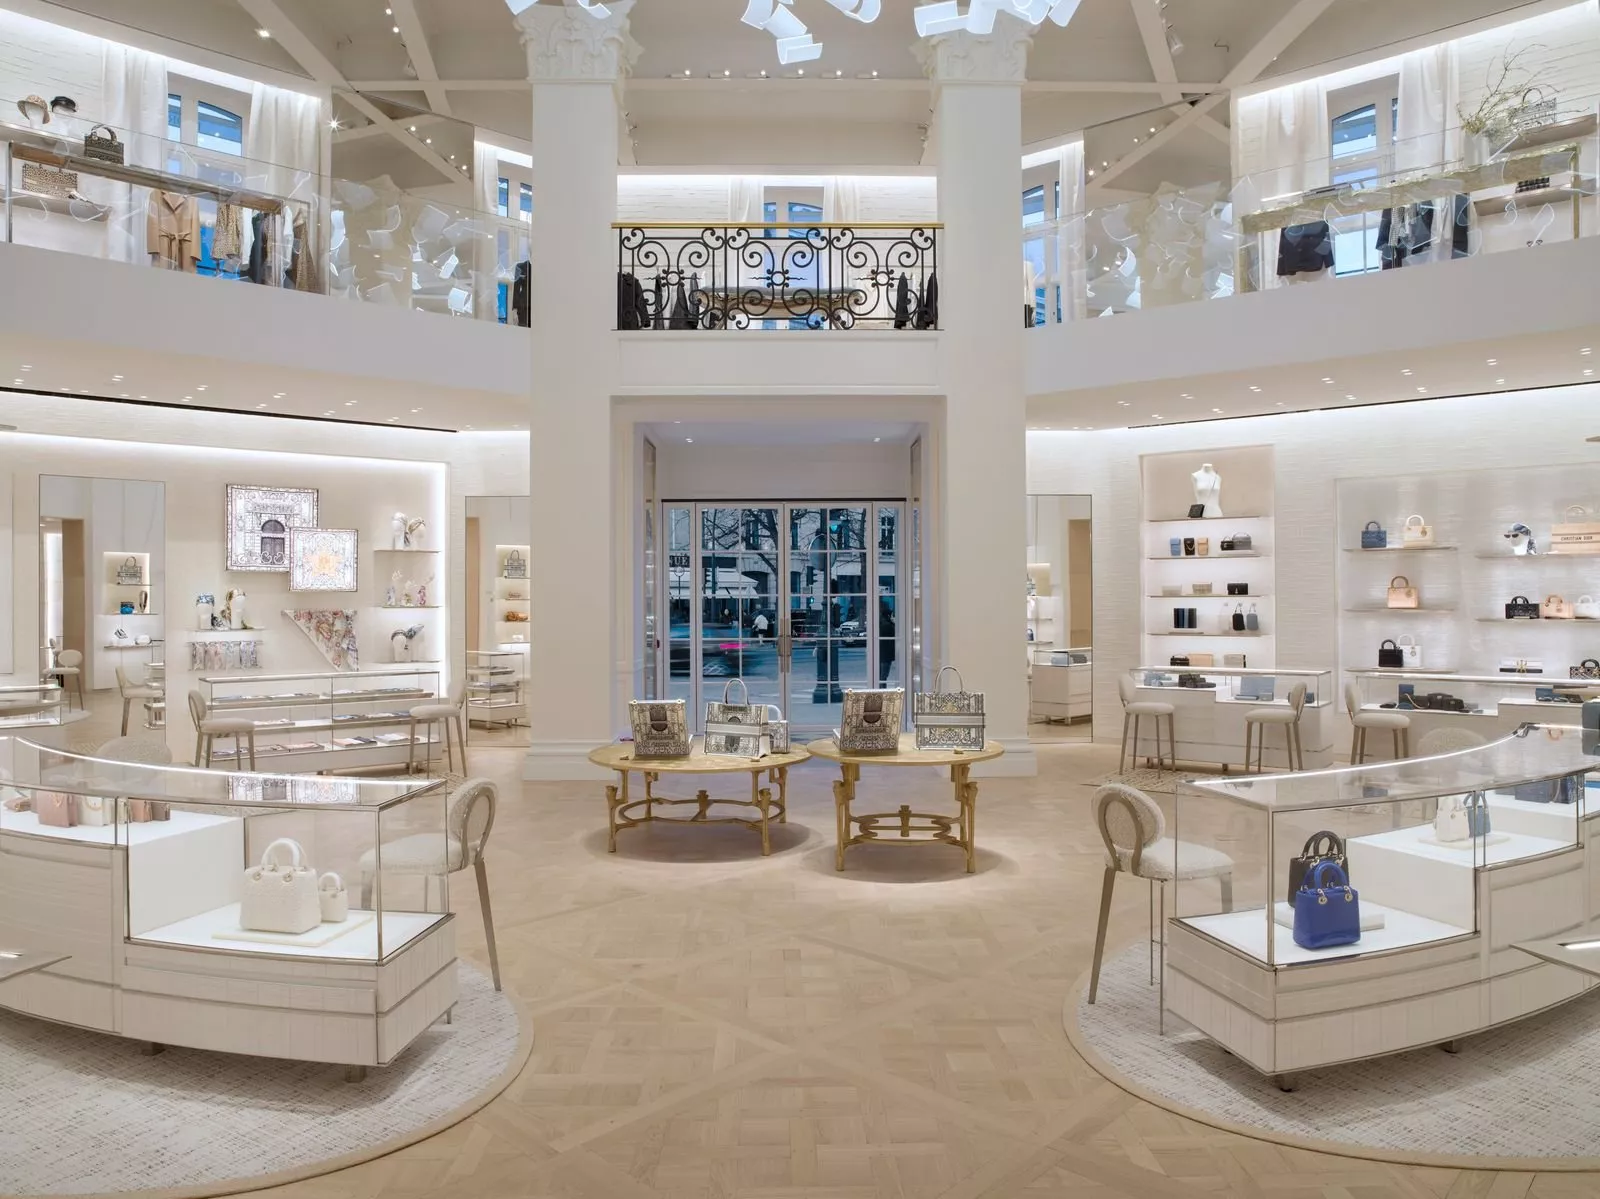 دار ديور Dior تعلن عن إعادة افتتاح بوتيك 30 Montaigne